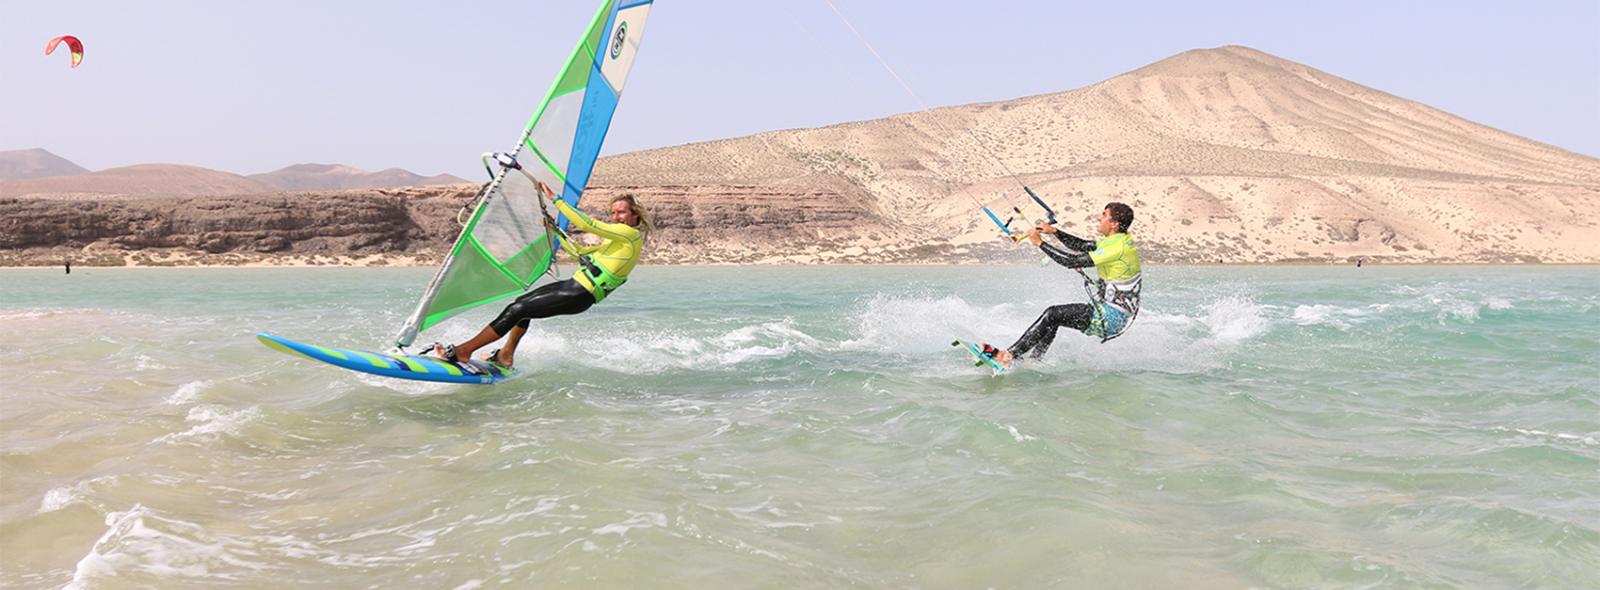 Un kitesurfer et un windsurfer à fuerteventura